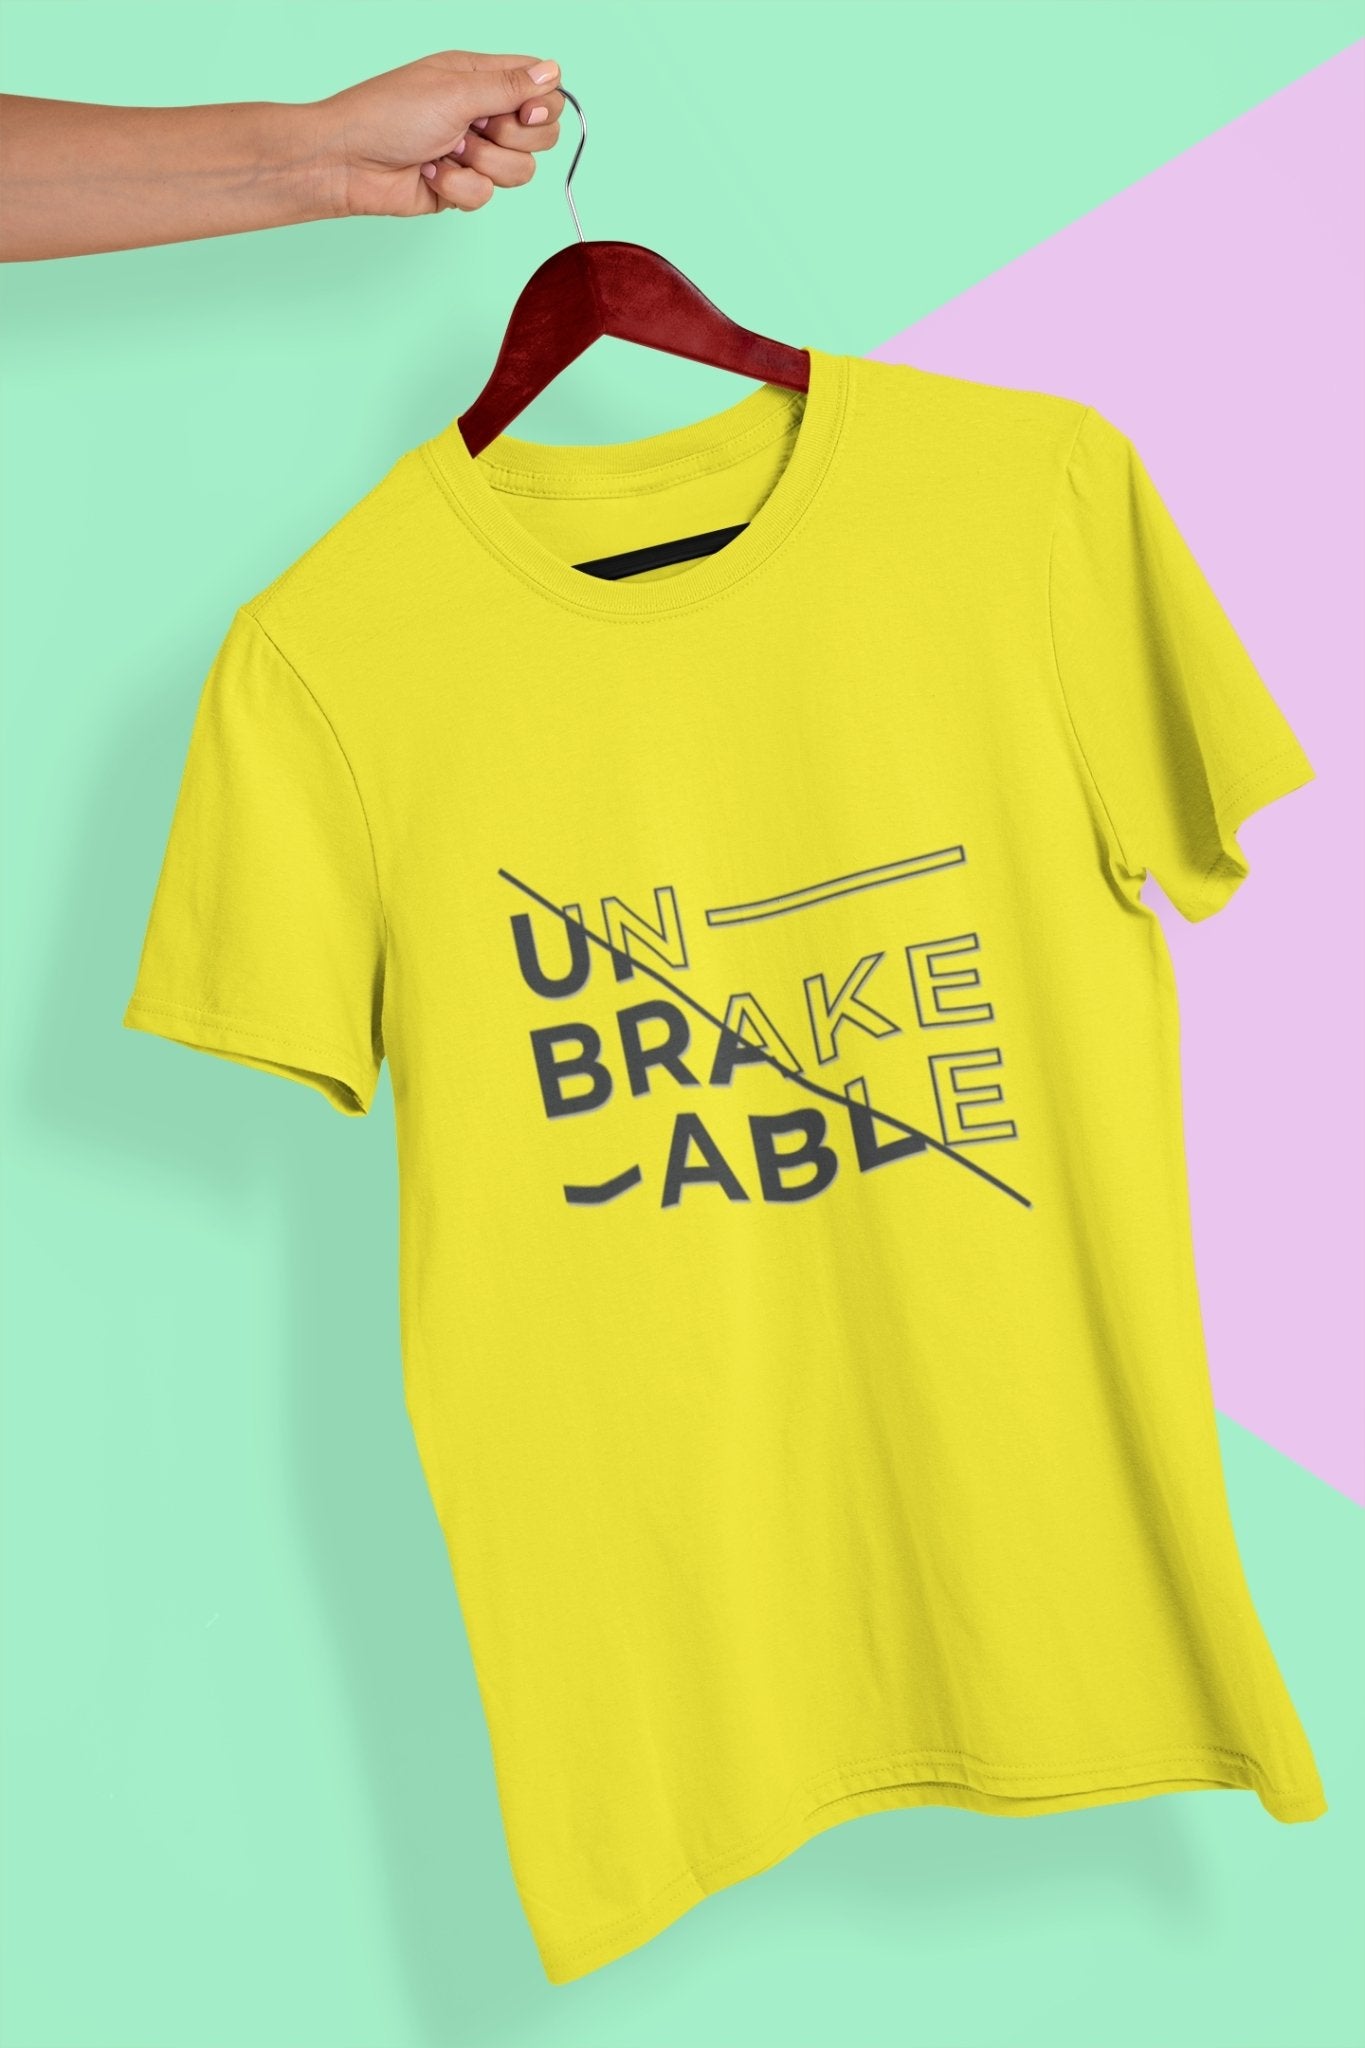 Unbreakable Mens Half Sleeves T-shirt- FunkyTeesClub - Funky Tees Club